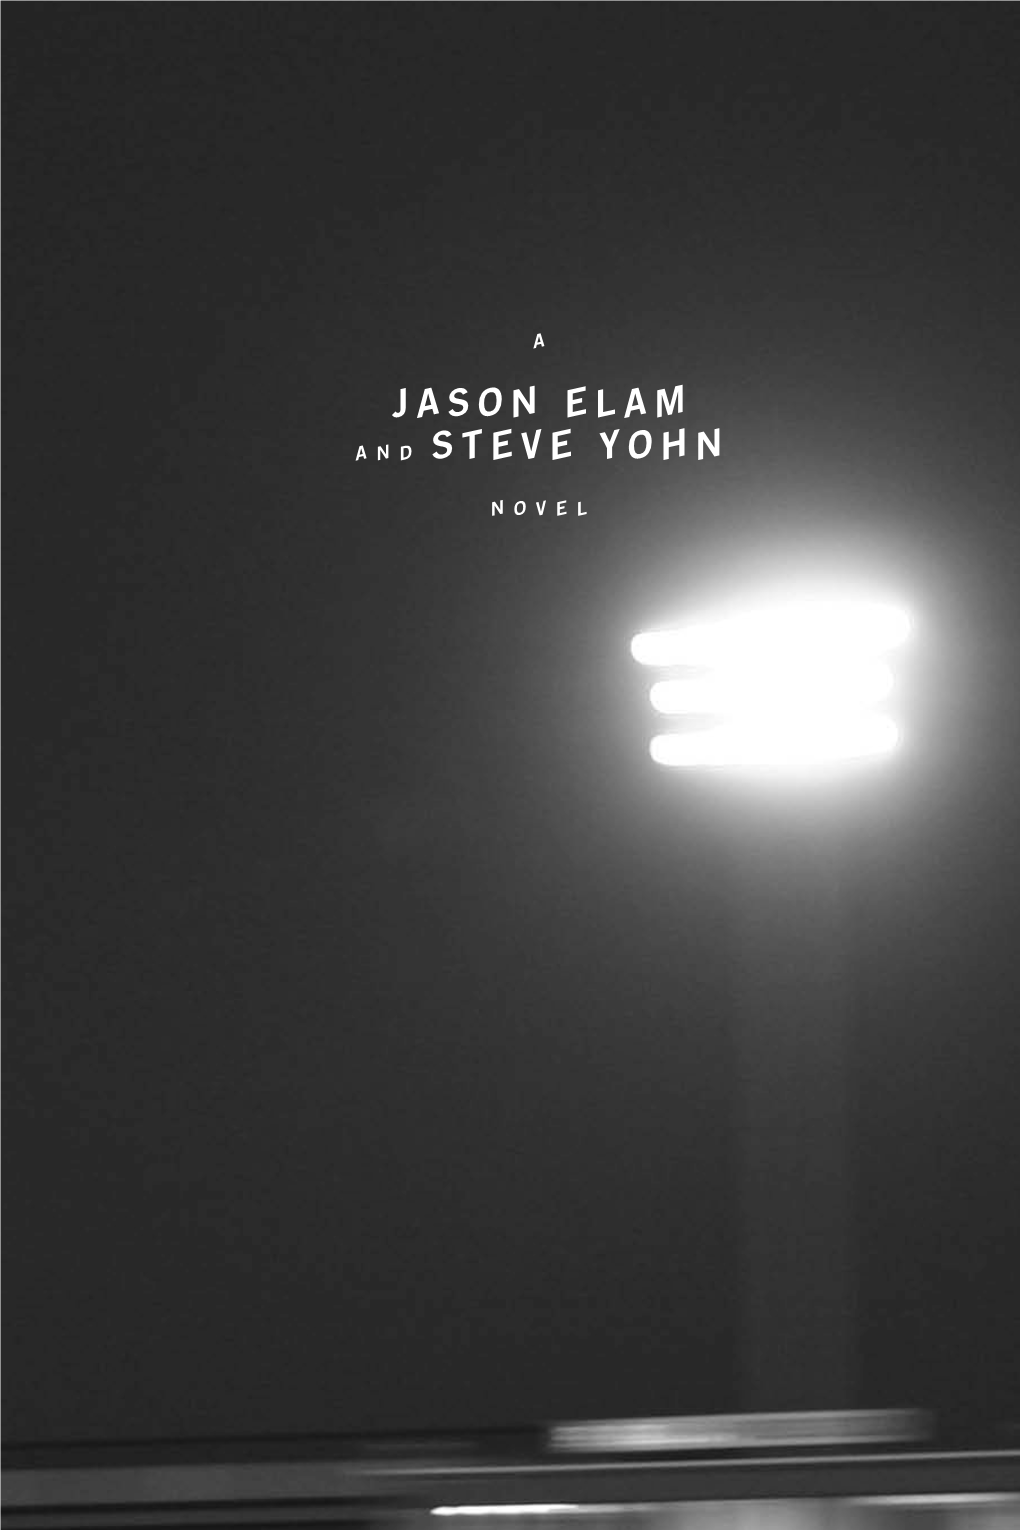 Jason Elam a N D Steve Yohn